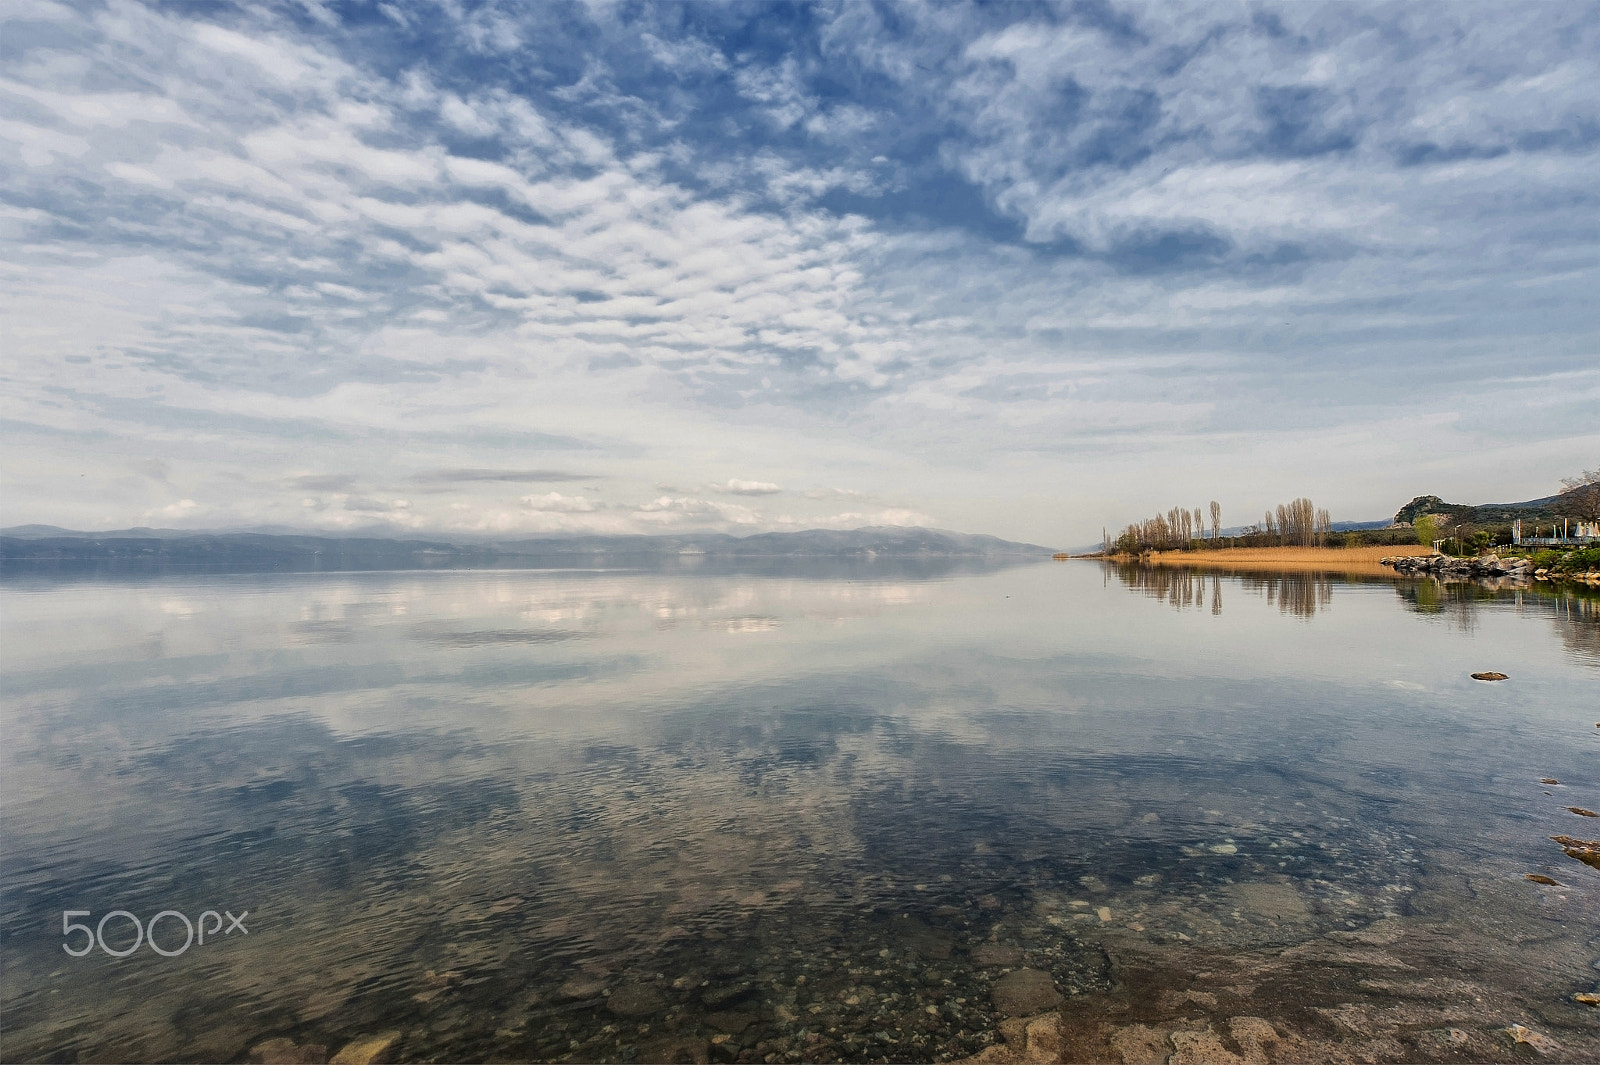 Nikon D700 + Sigma 12-24mm F4.5-5.6 EX DG Aspherical HSM sample photo. İznik gölü (İznik lake)/bursa/türkiye.... photography